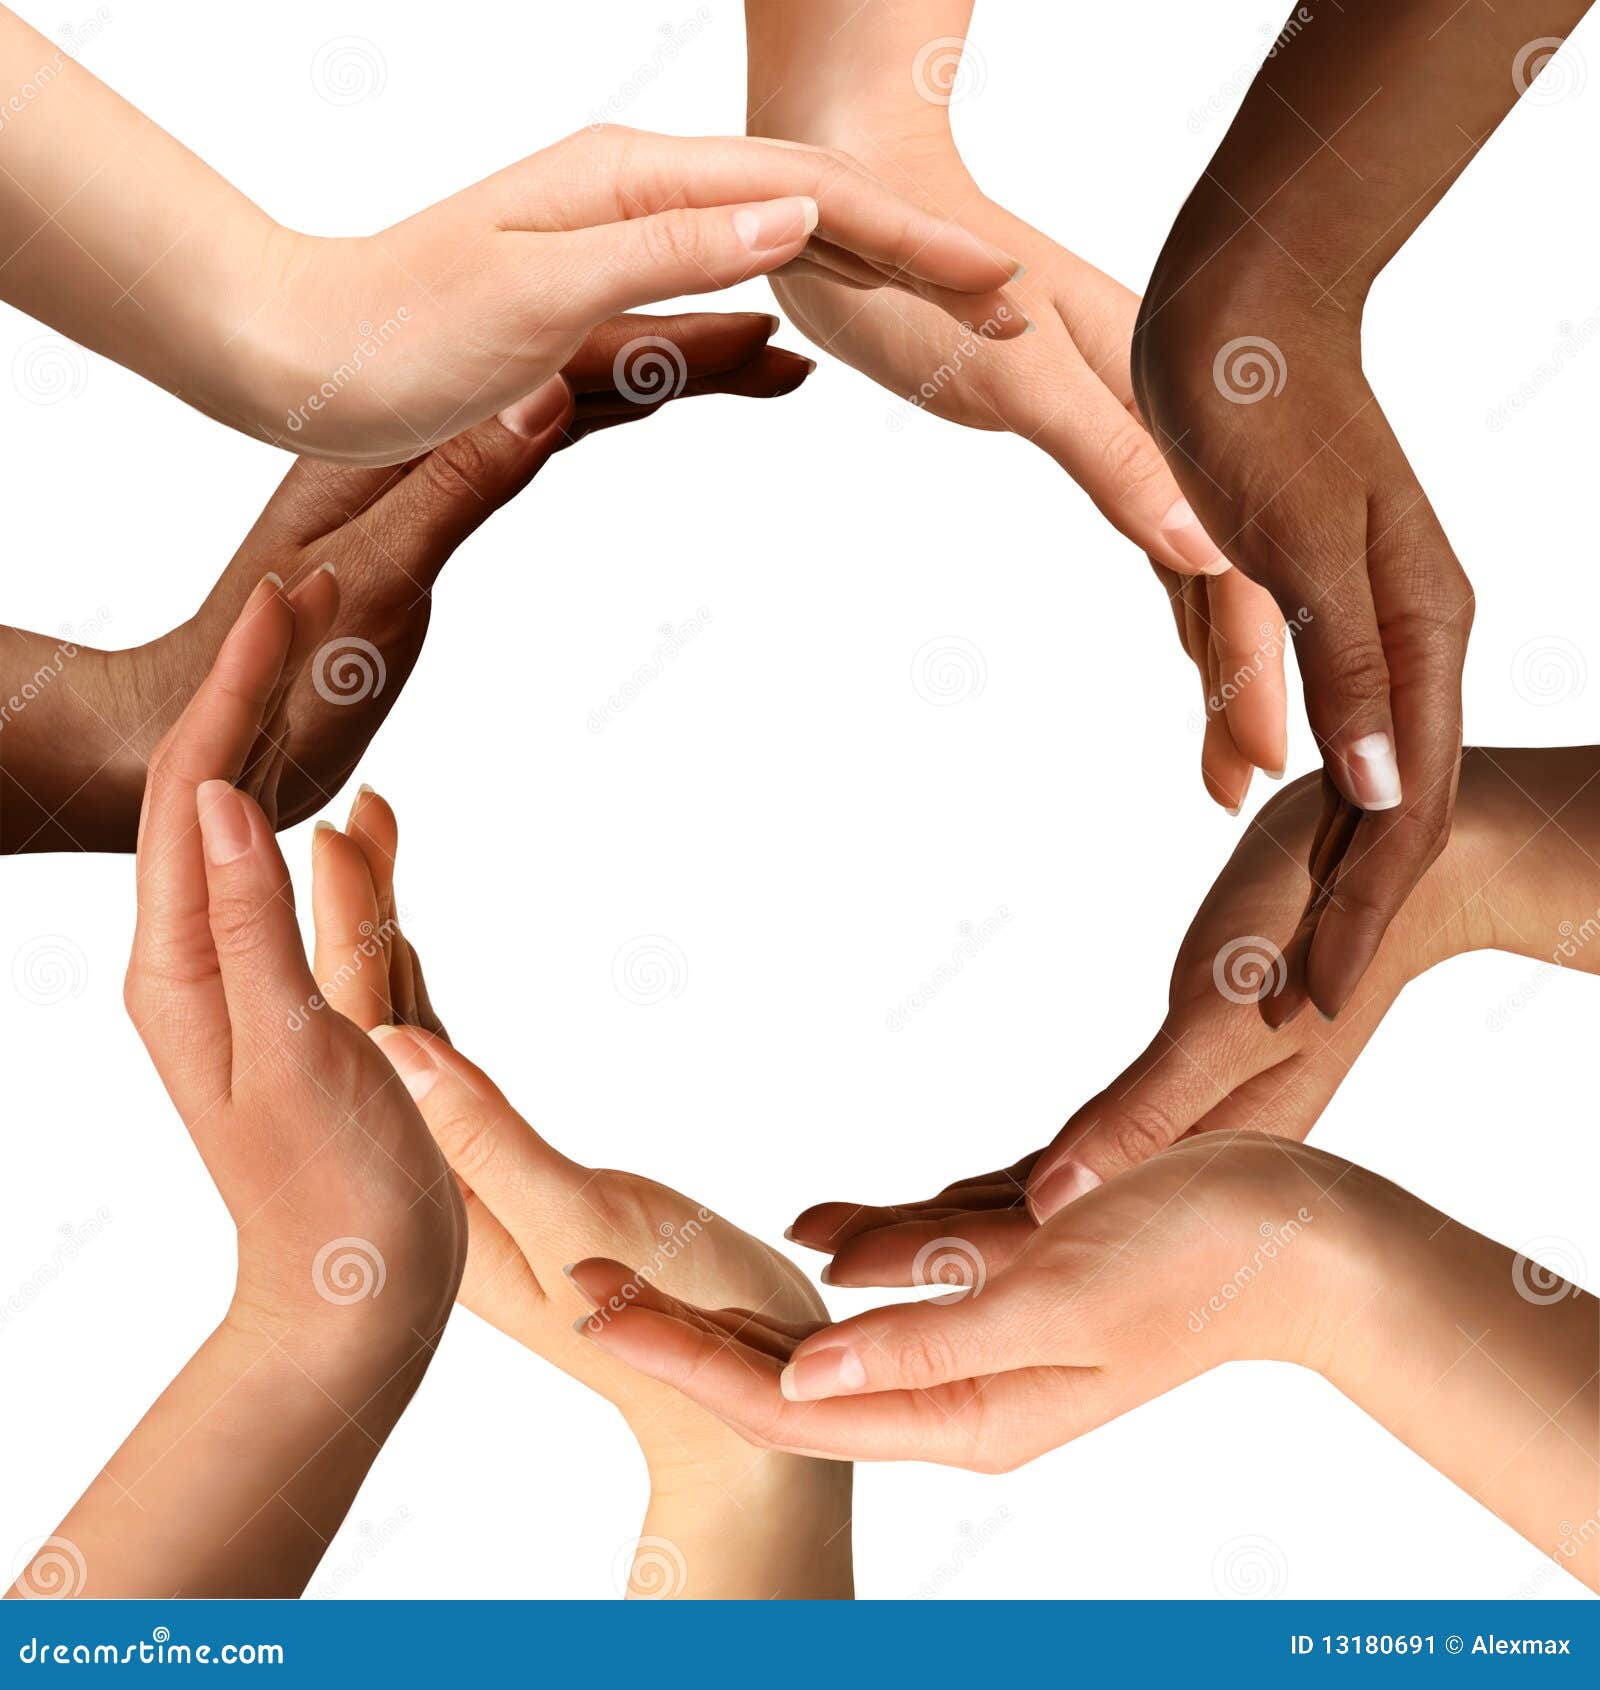 multiracial hands making a circle